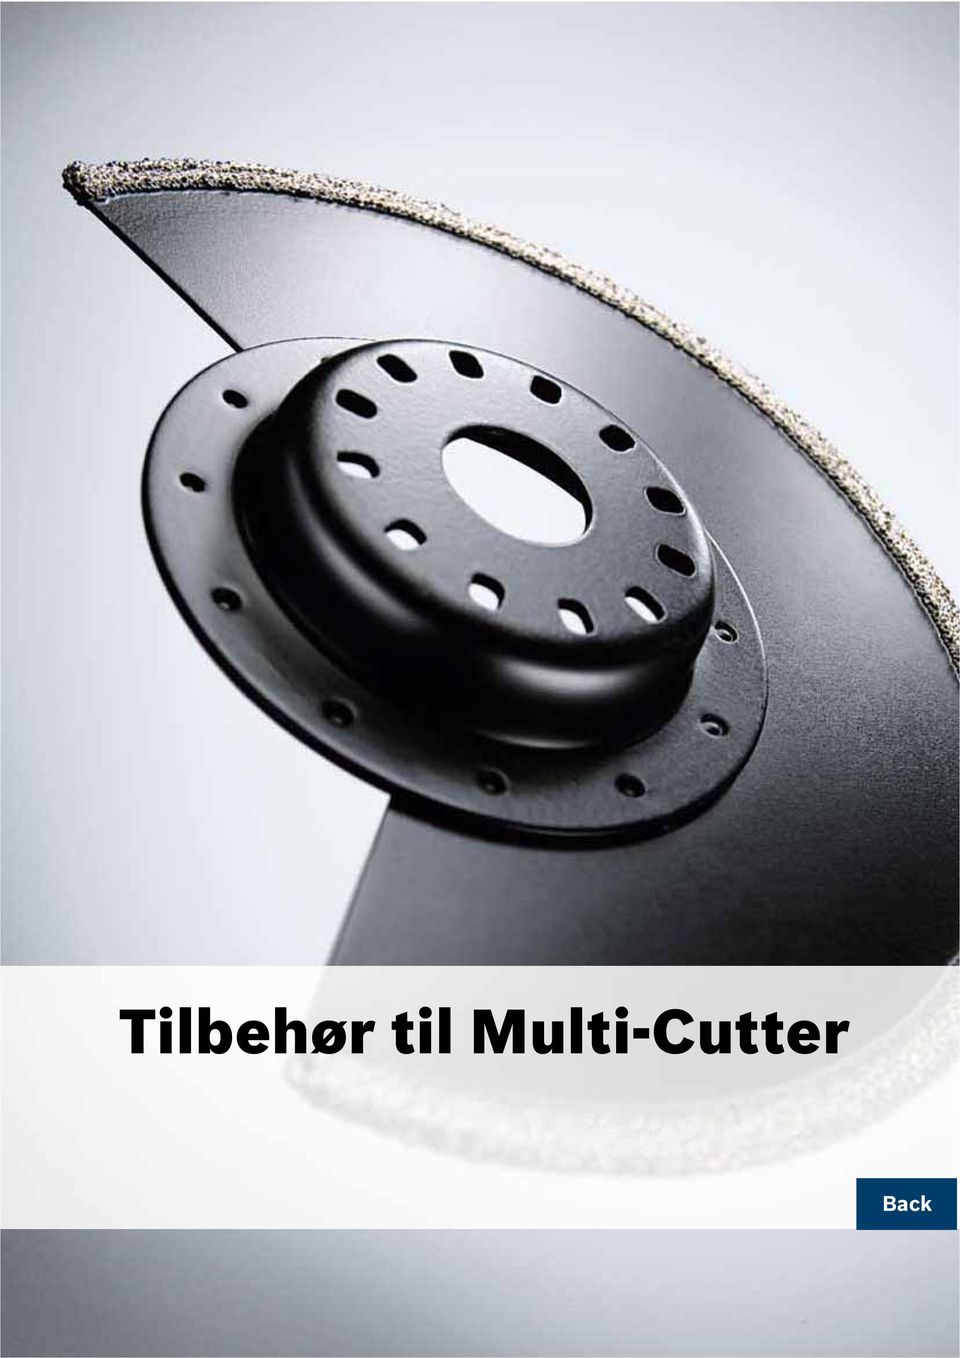 Tilbehør Multi-Cutter - PDF Free Download